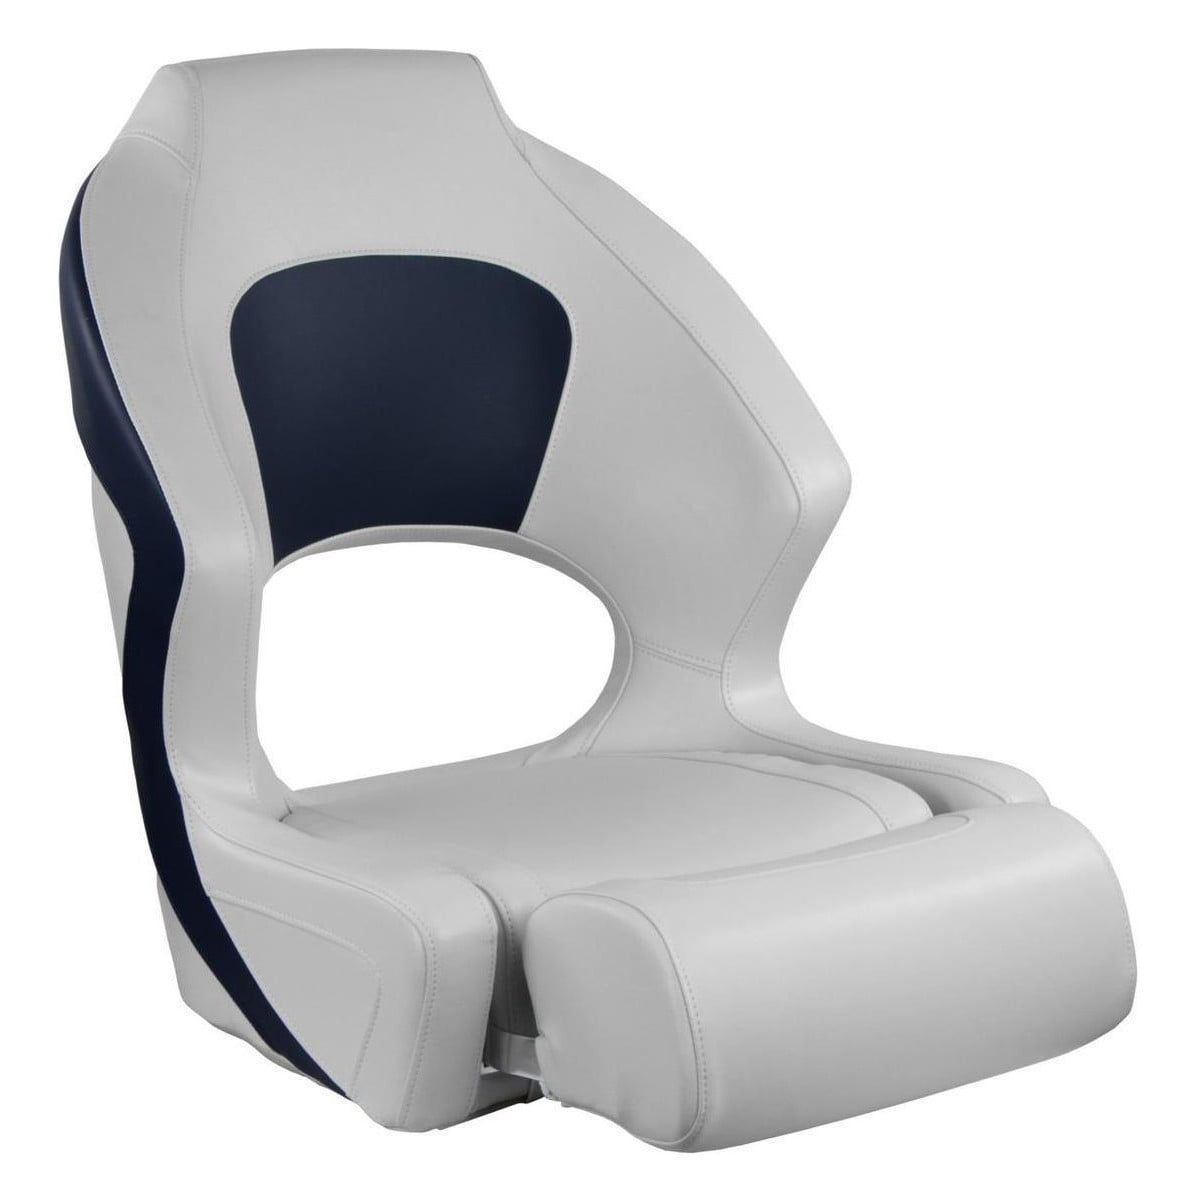 Кресло мягкое Deluxe Sport с откидным валиком, белый/синий